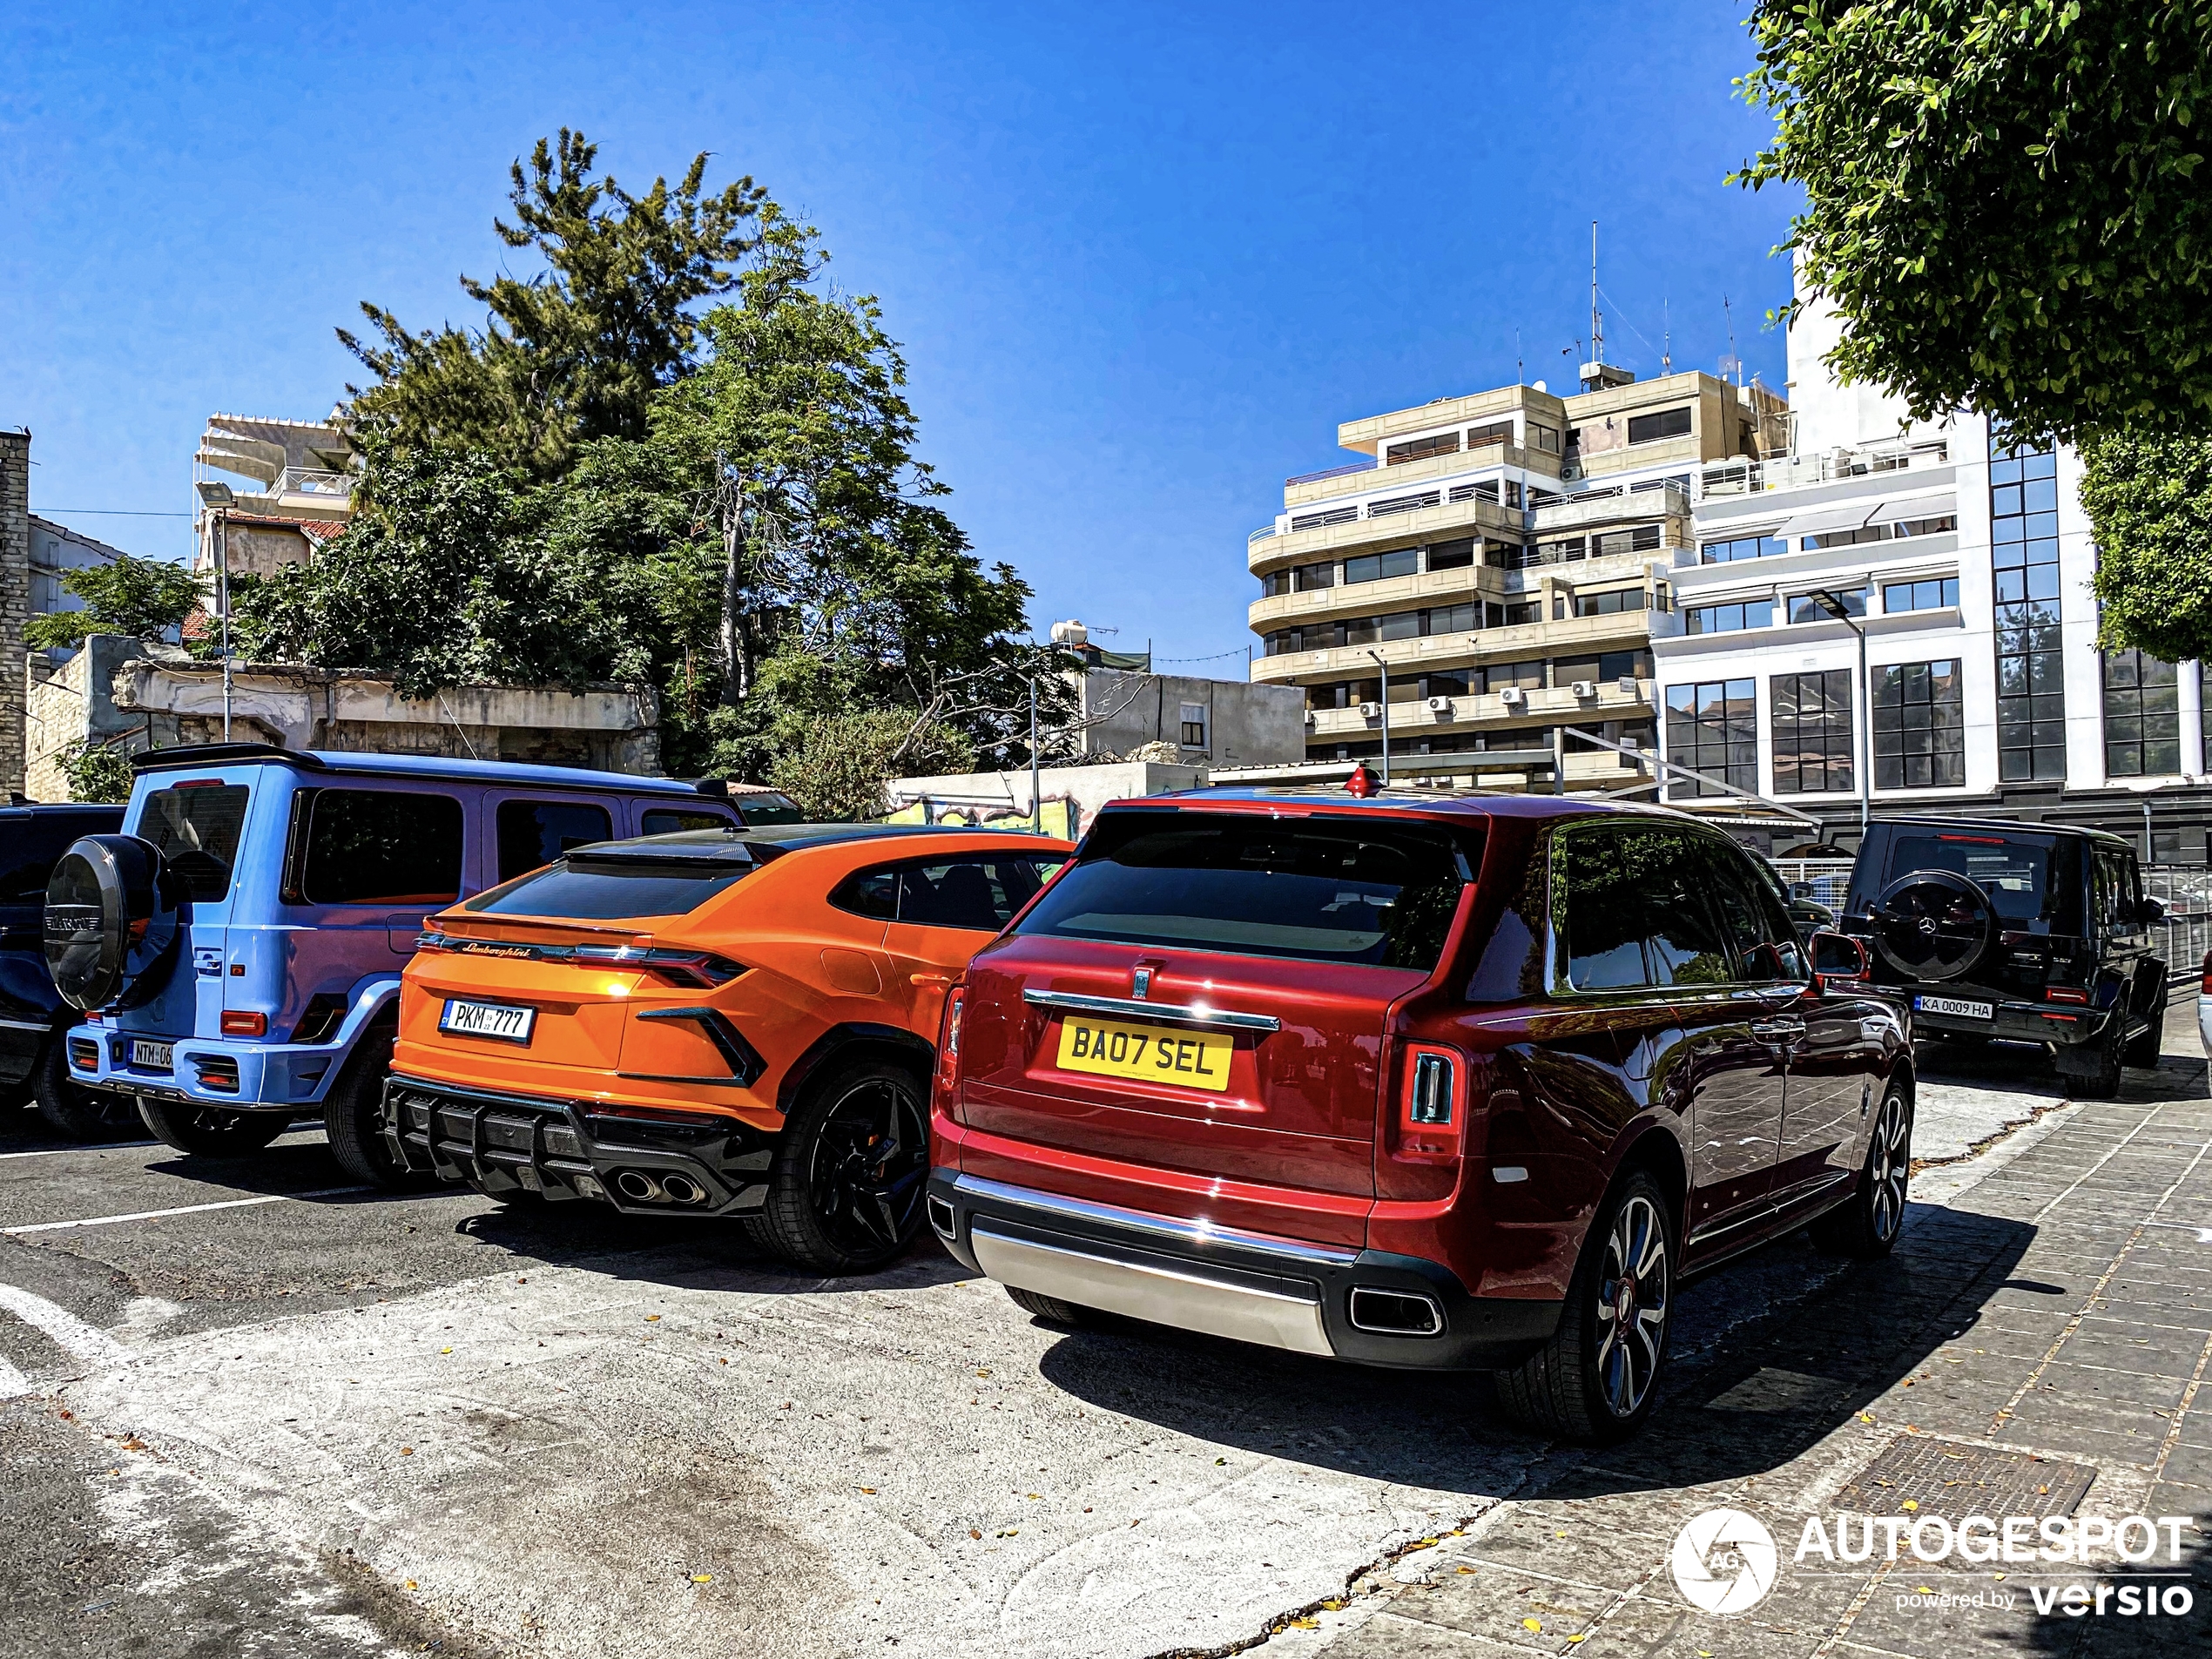 Sjajan luksuzni SUV trio pojavljuje se u Limasolu.